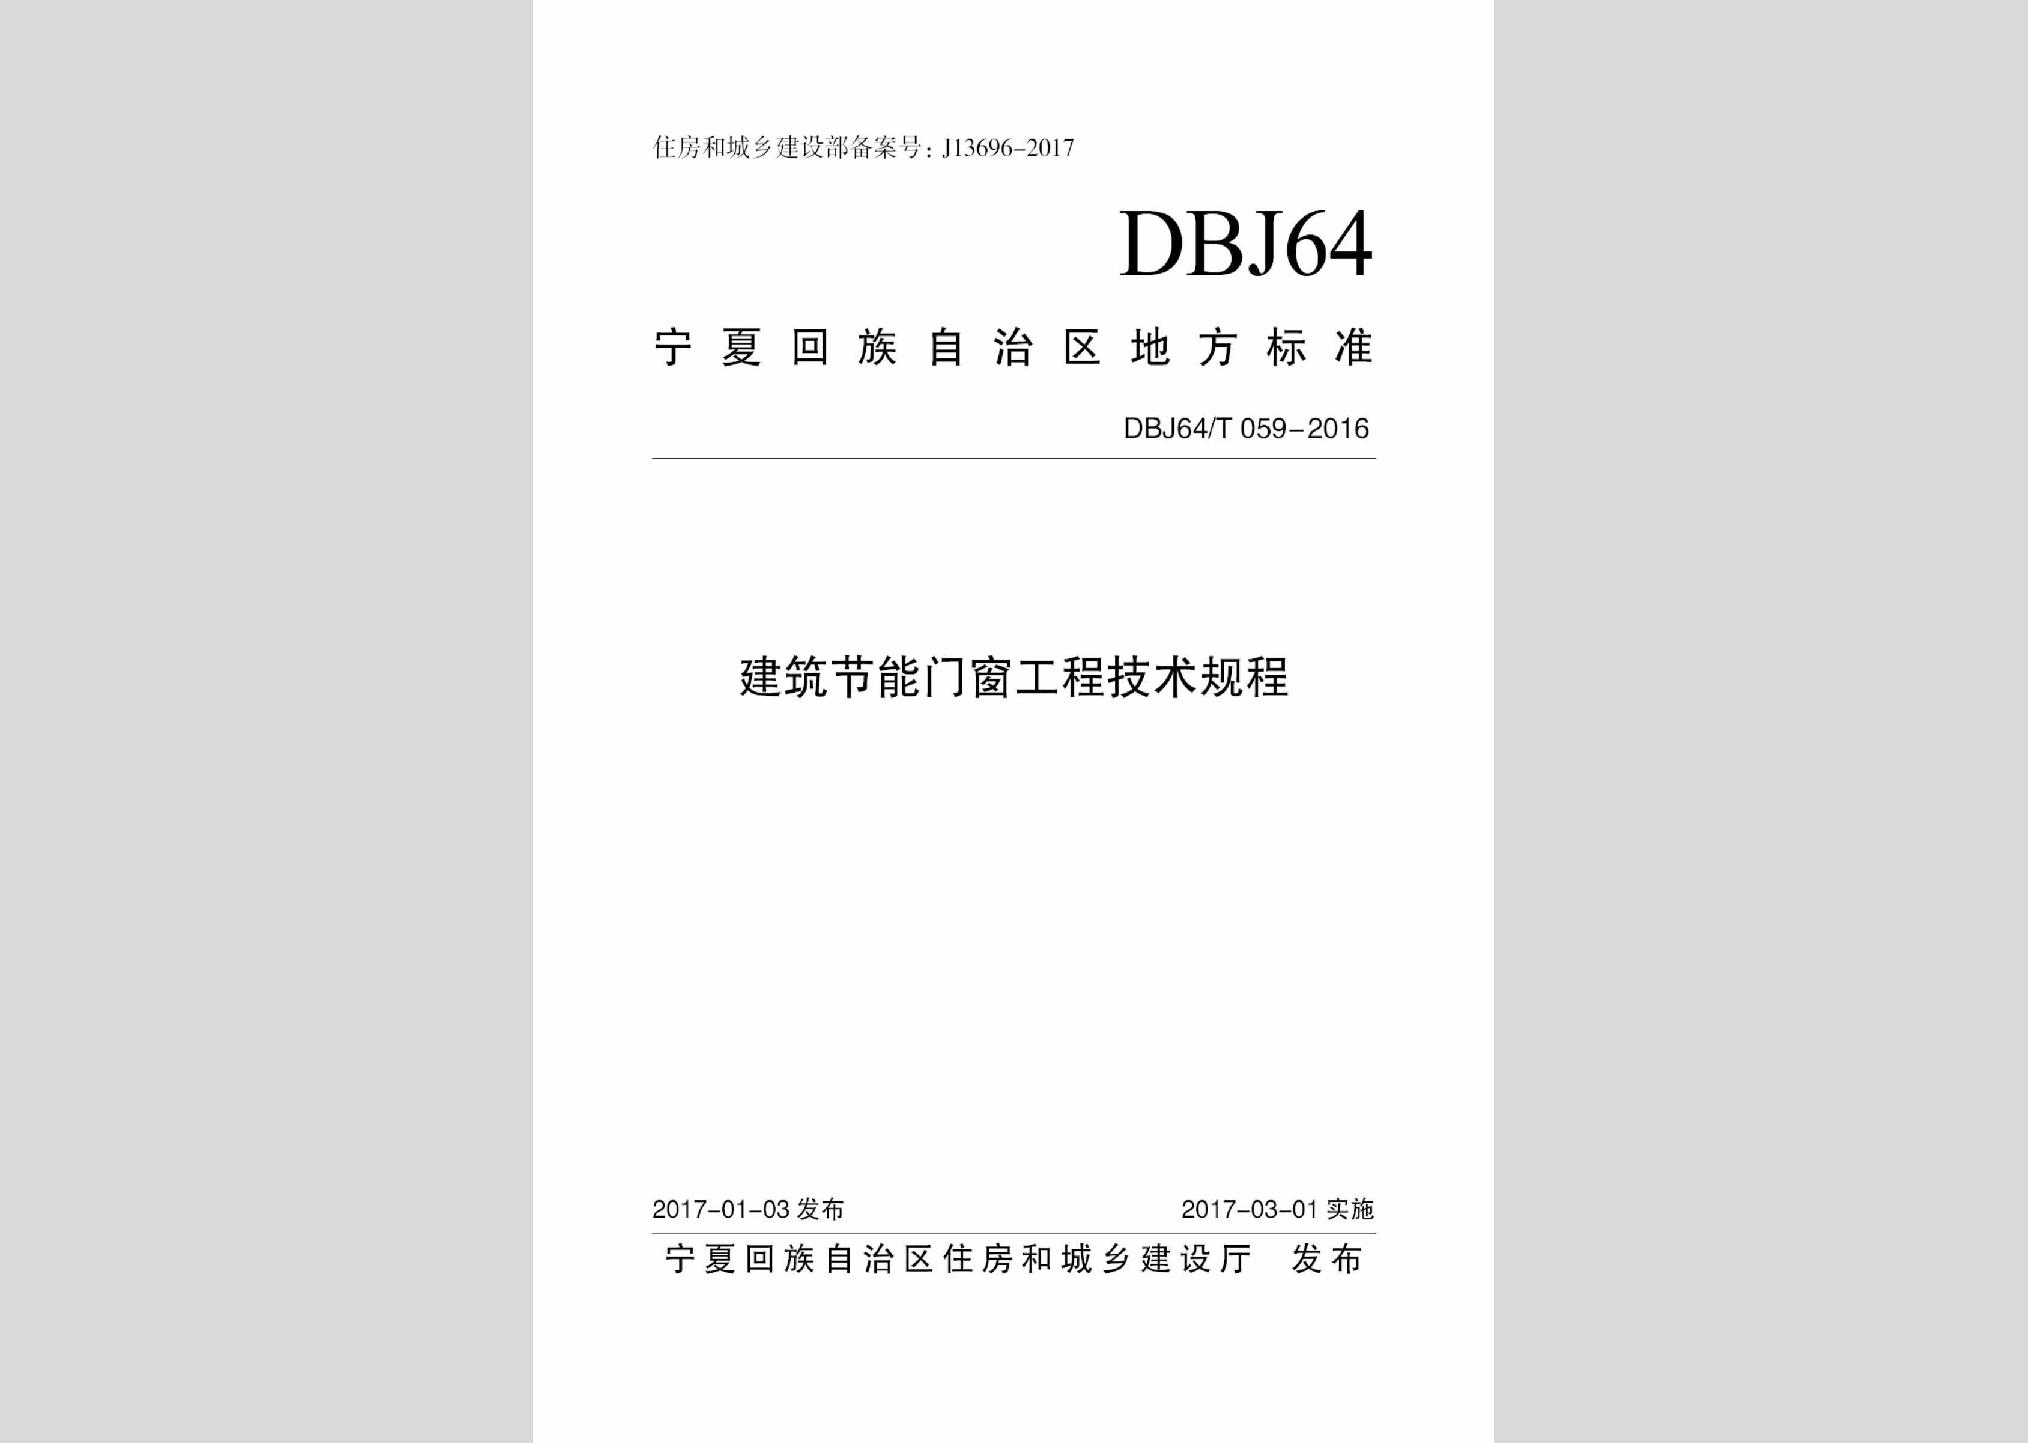 DBJ64/T059-2016：建筑节能门窗工程技术规程